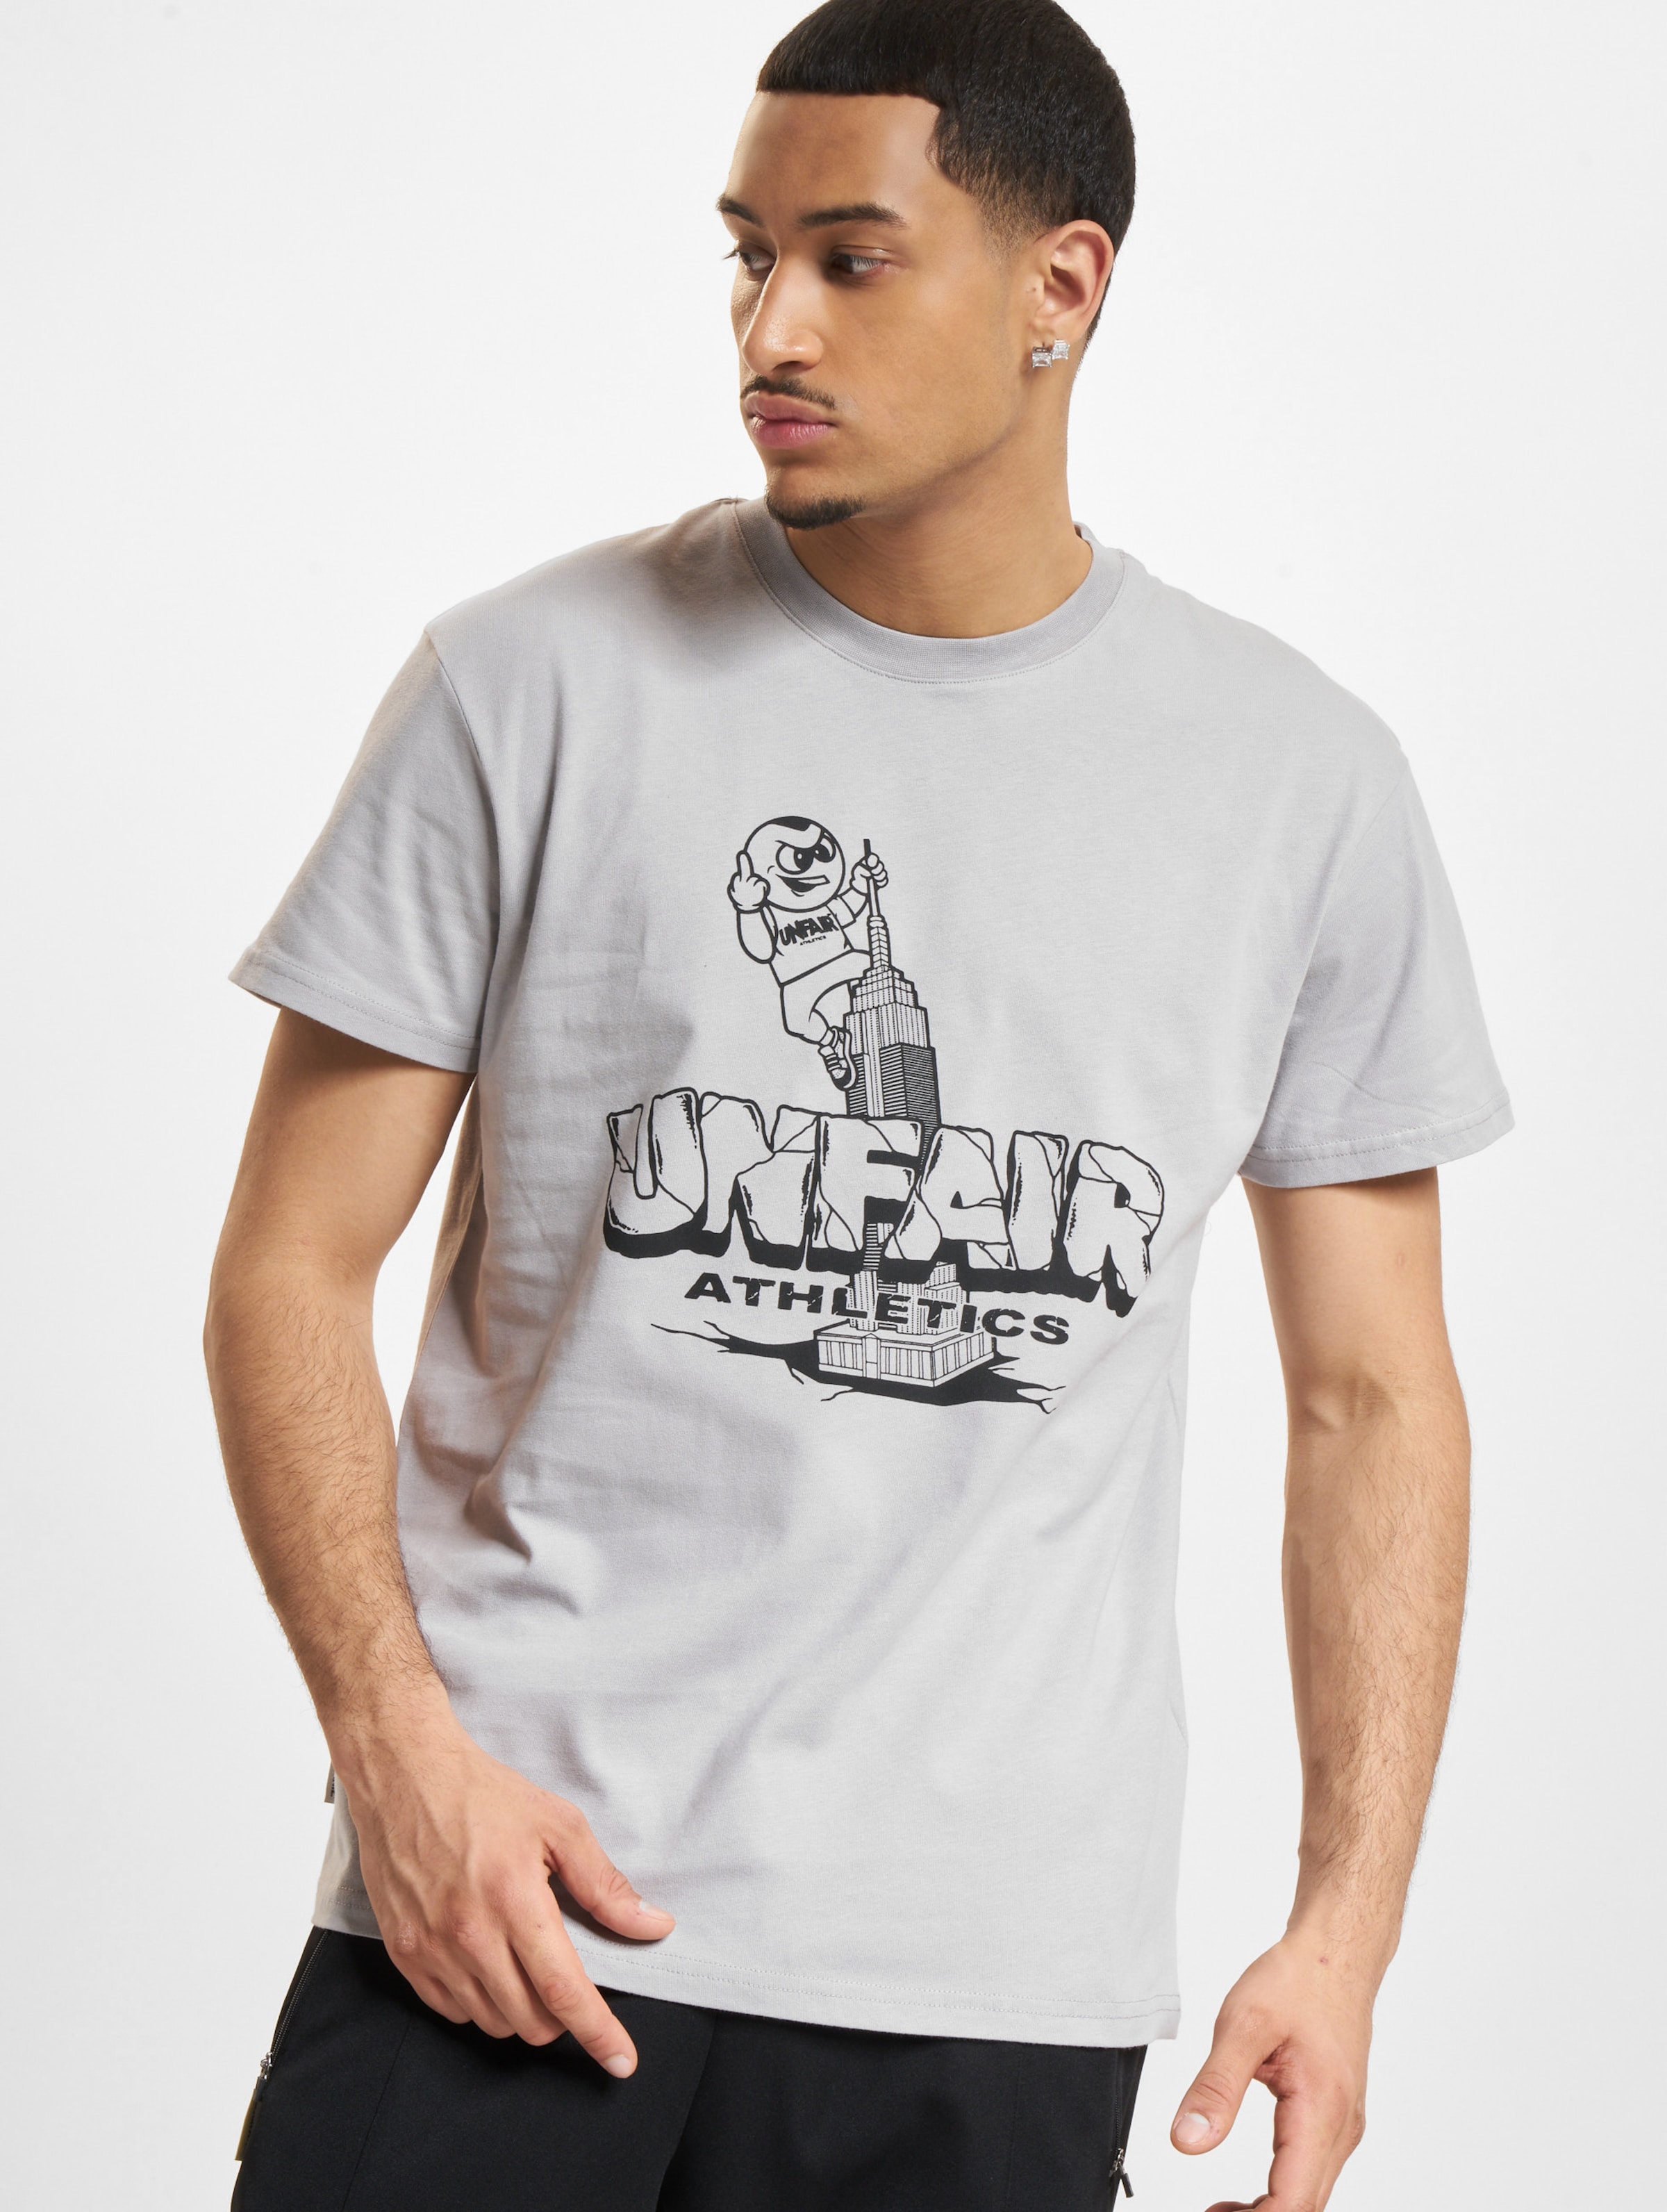 UNFAIR ATHLETICS PB KING T-Shirt Männer,Unisex op kleur grijs, Maat 3XL